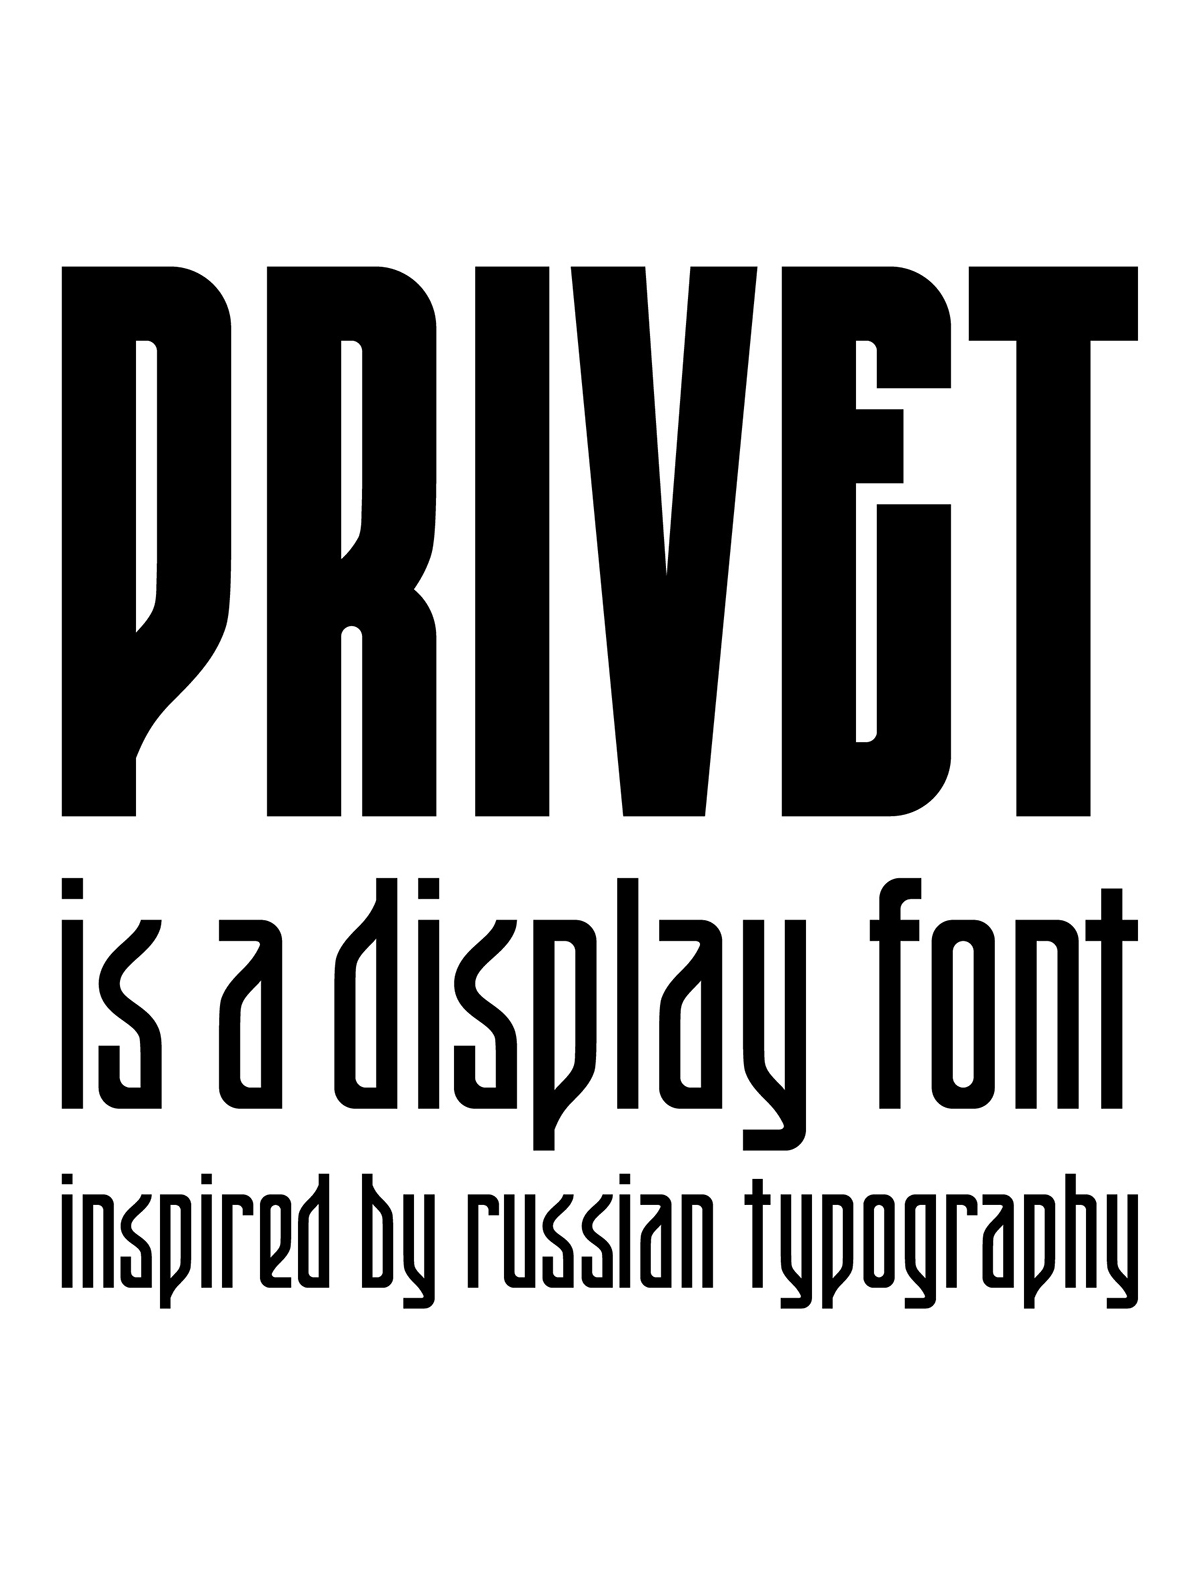 Adobe Portfolio type design lettering